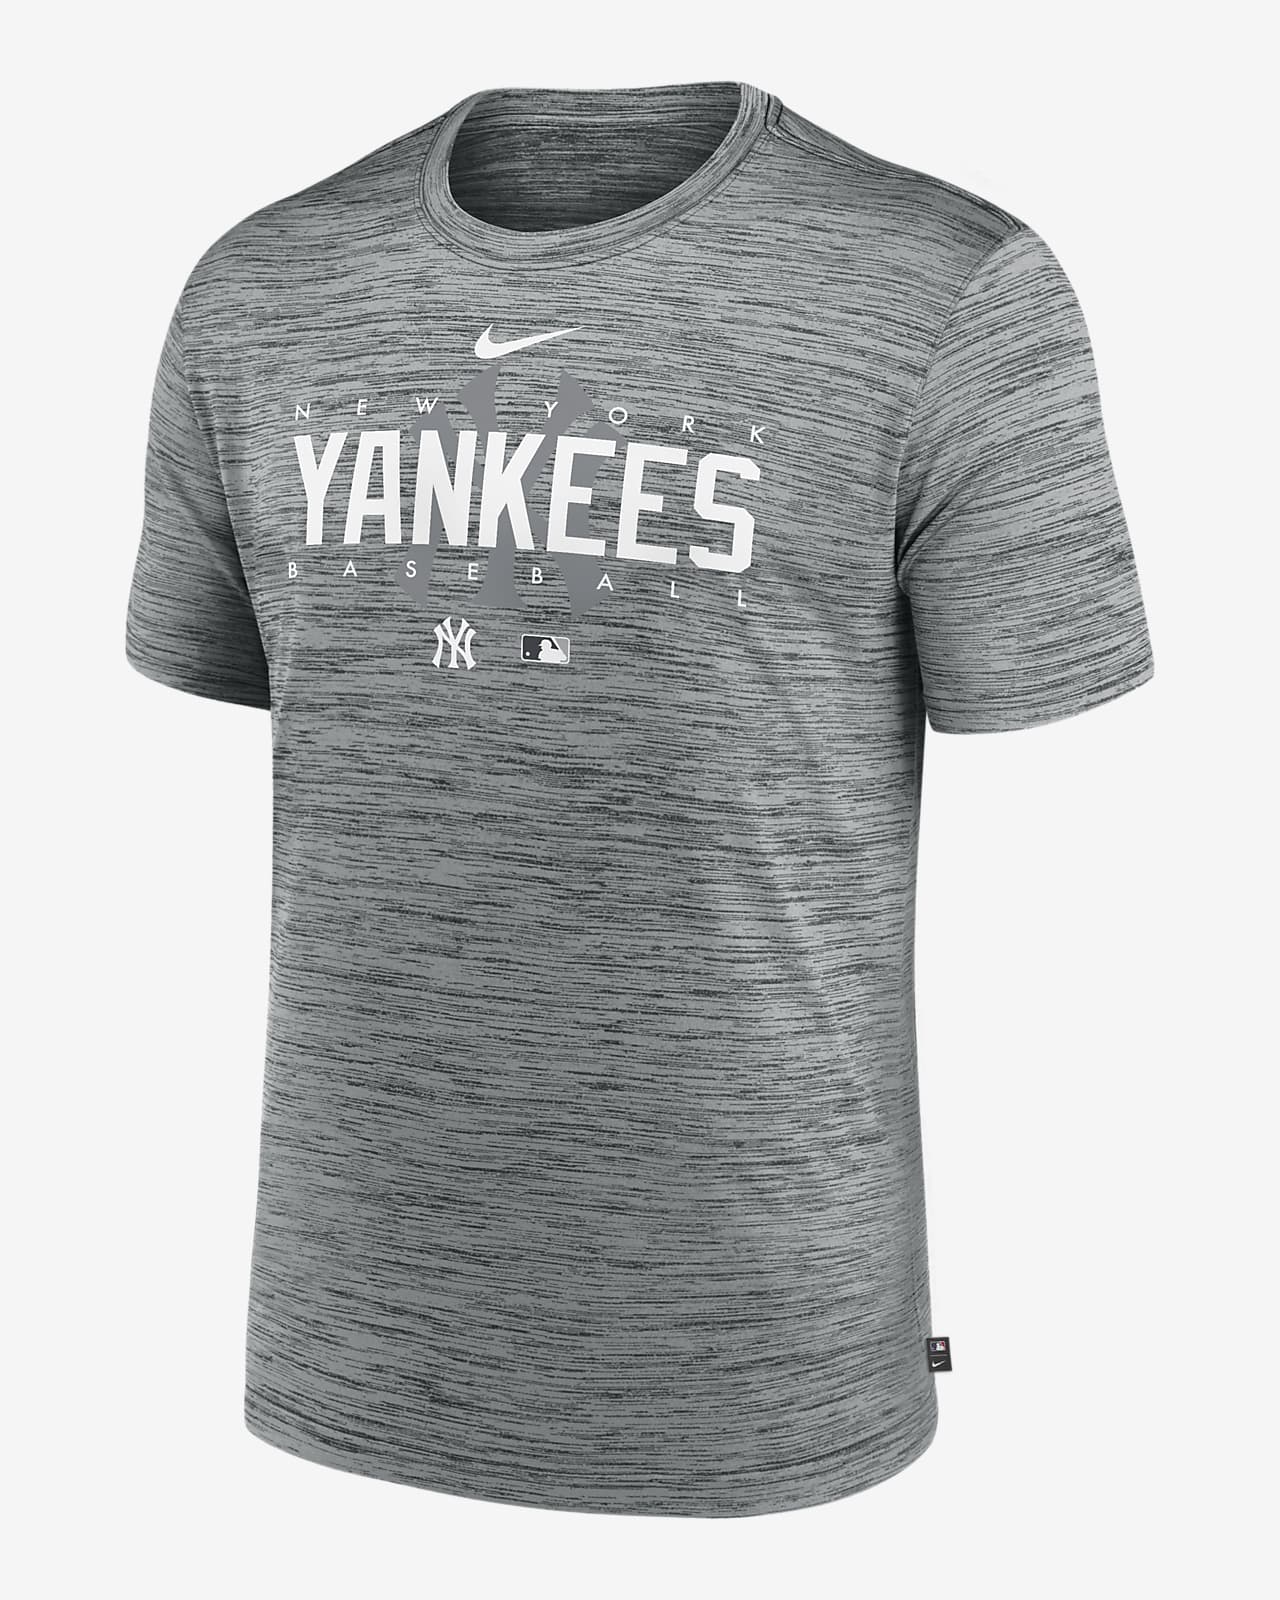 Yankees T Shirt 